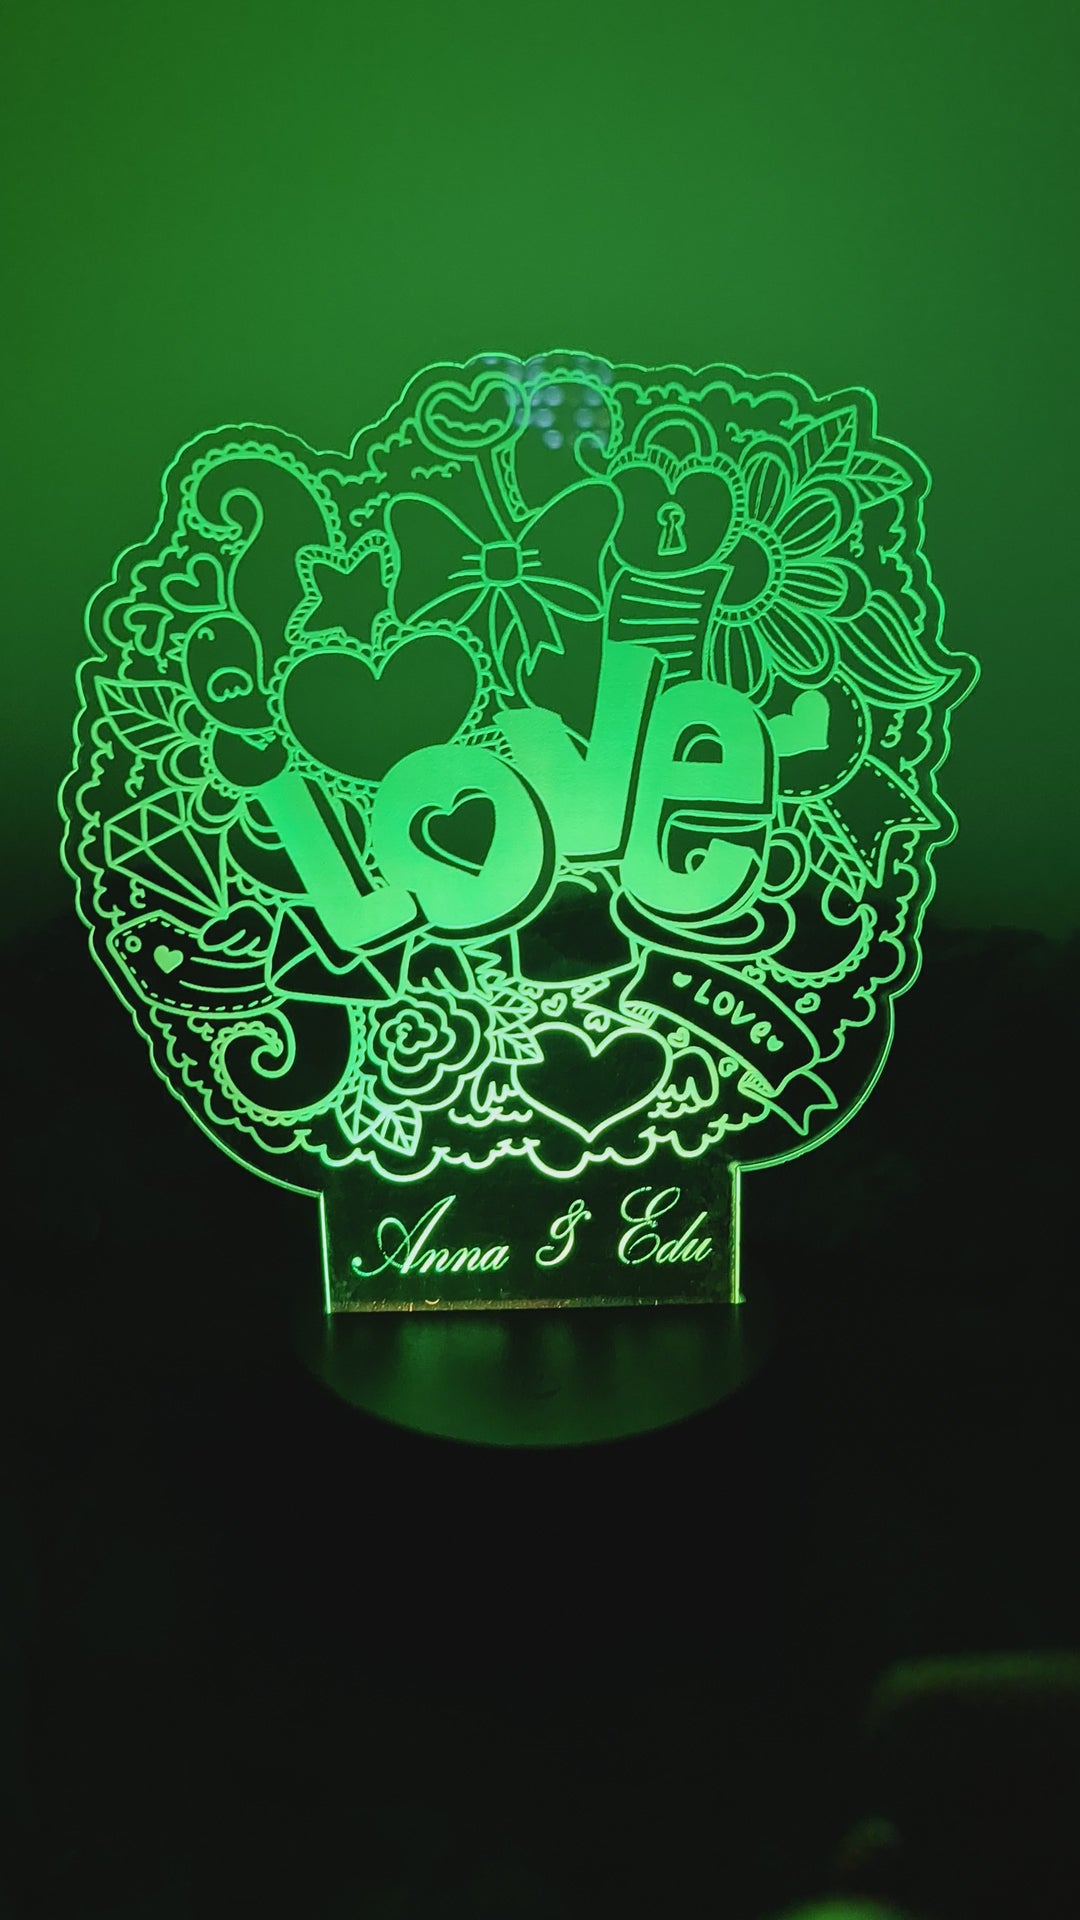 Lámpara con nombre personalizado - San Valentín - Regalo romántico y original